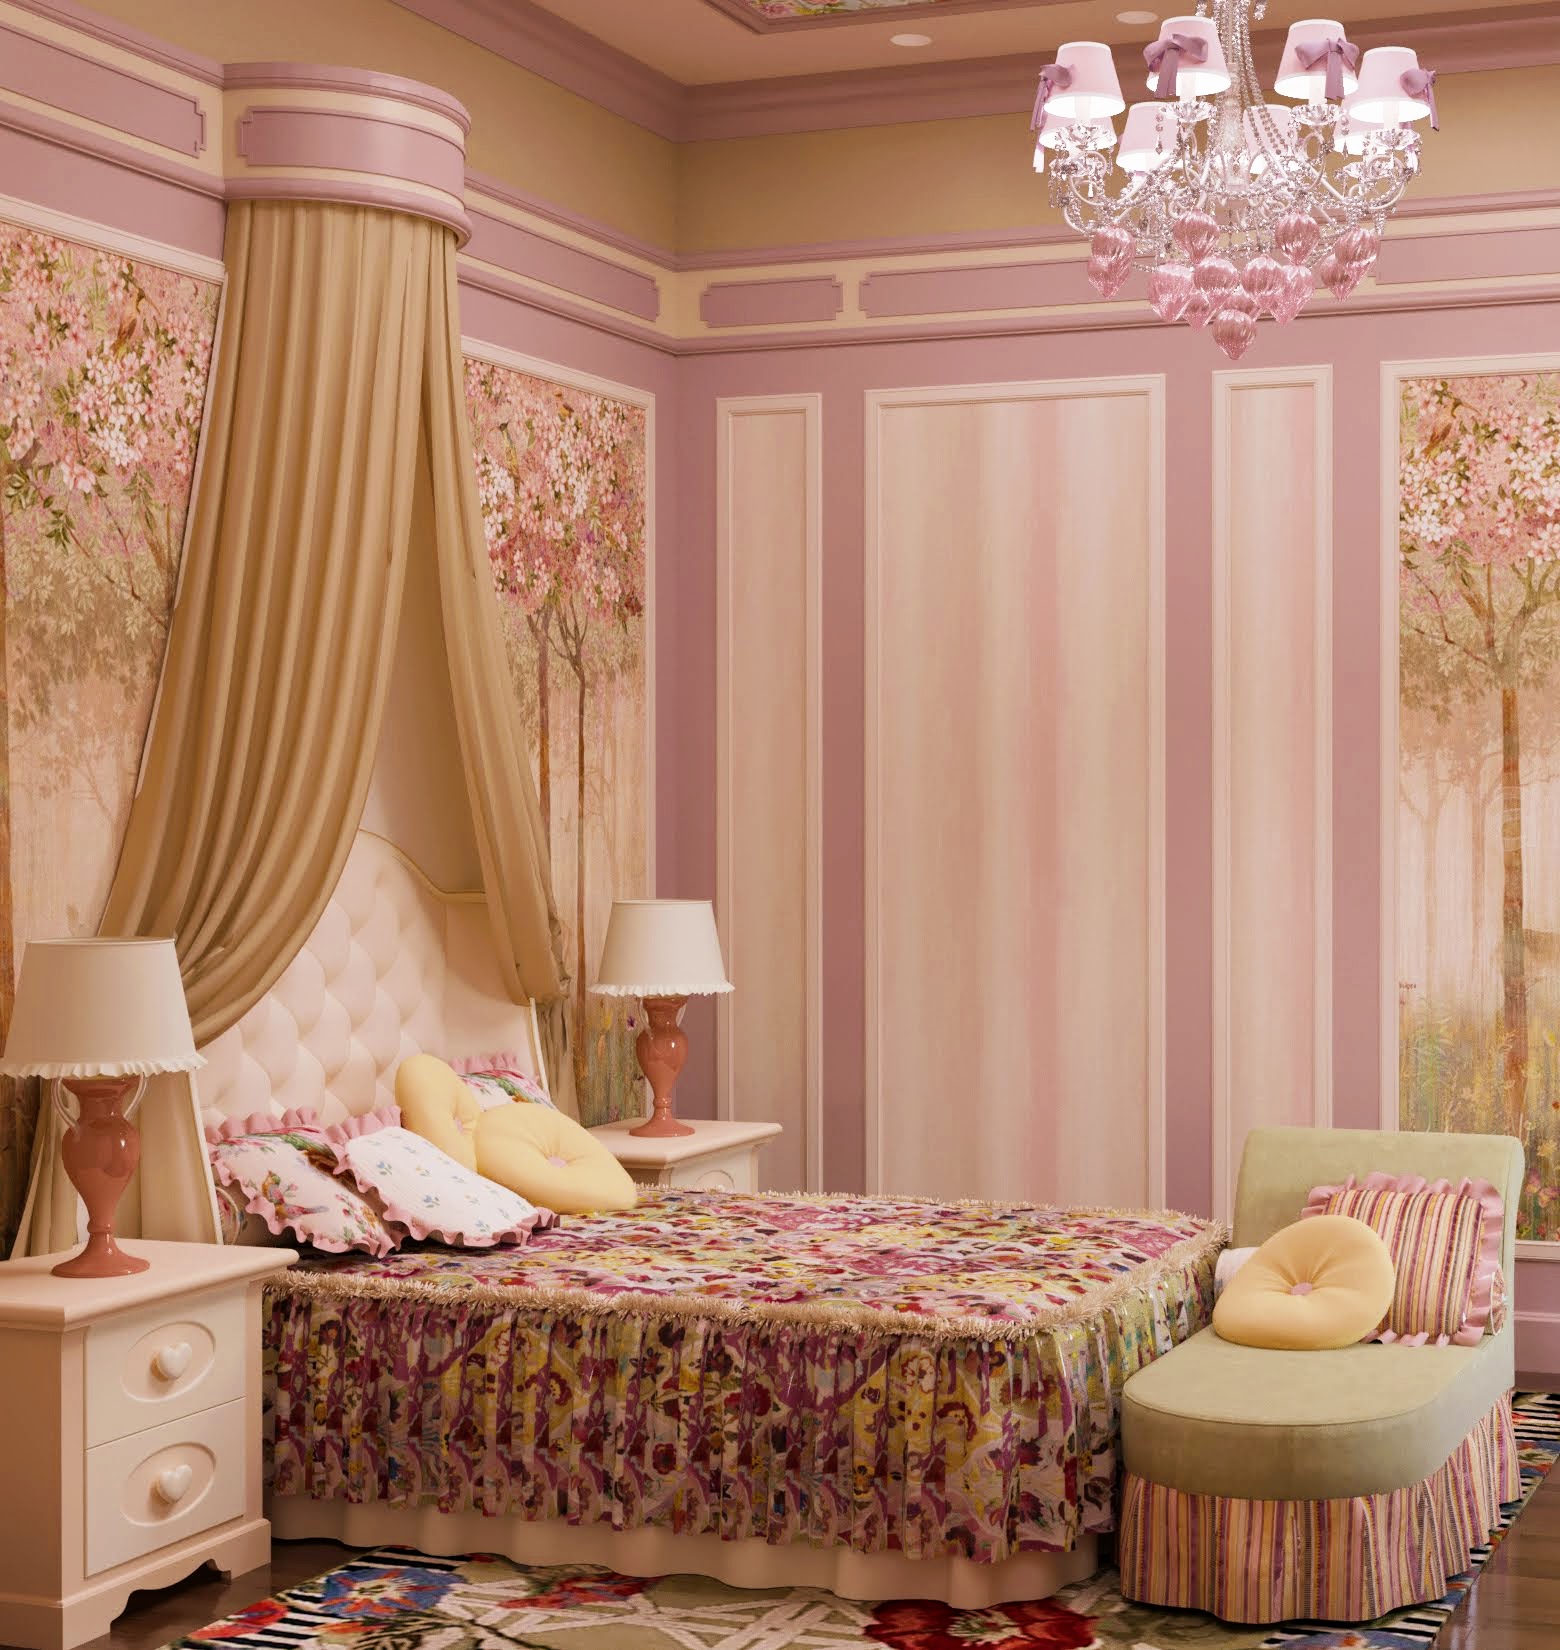 Текстильный дизайн в оформлении спальни